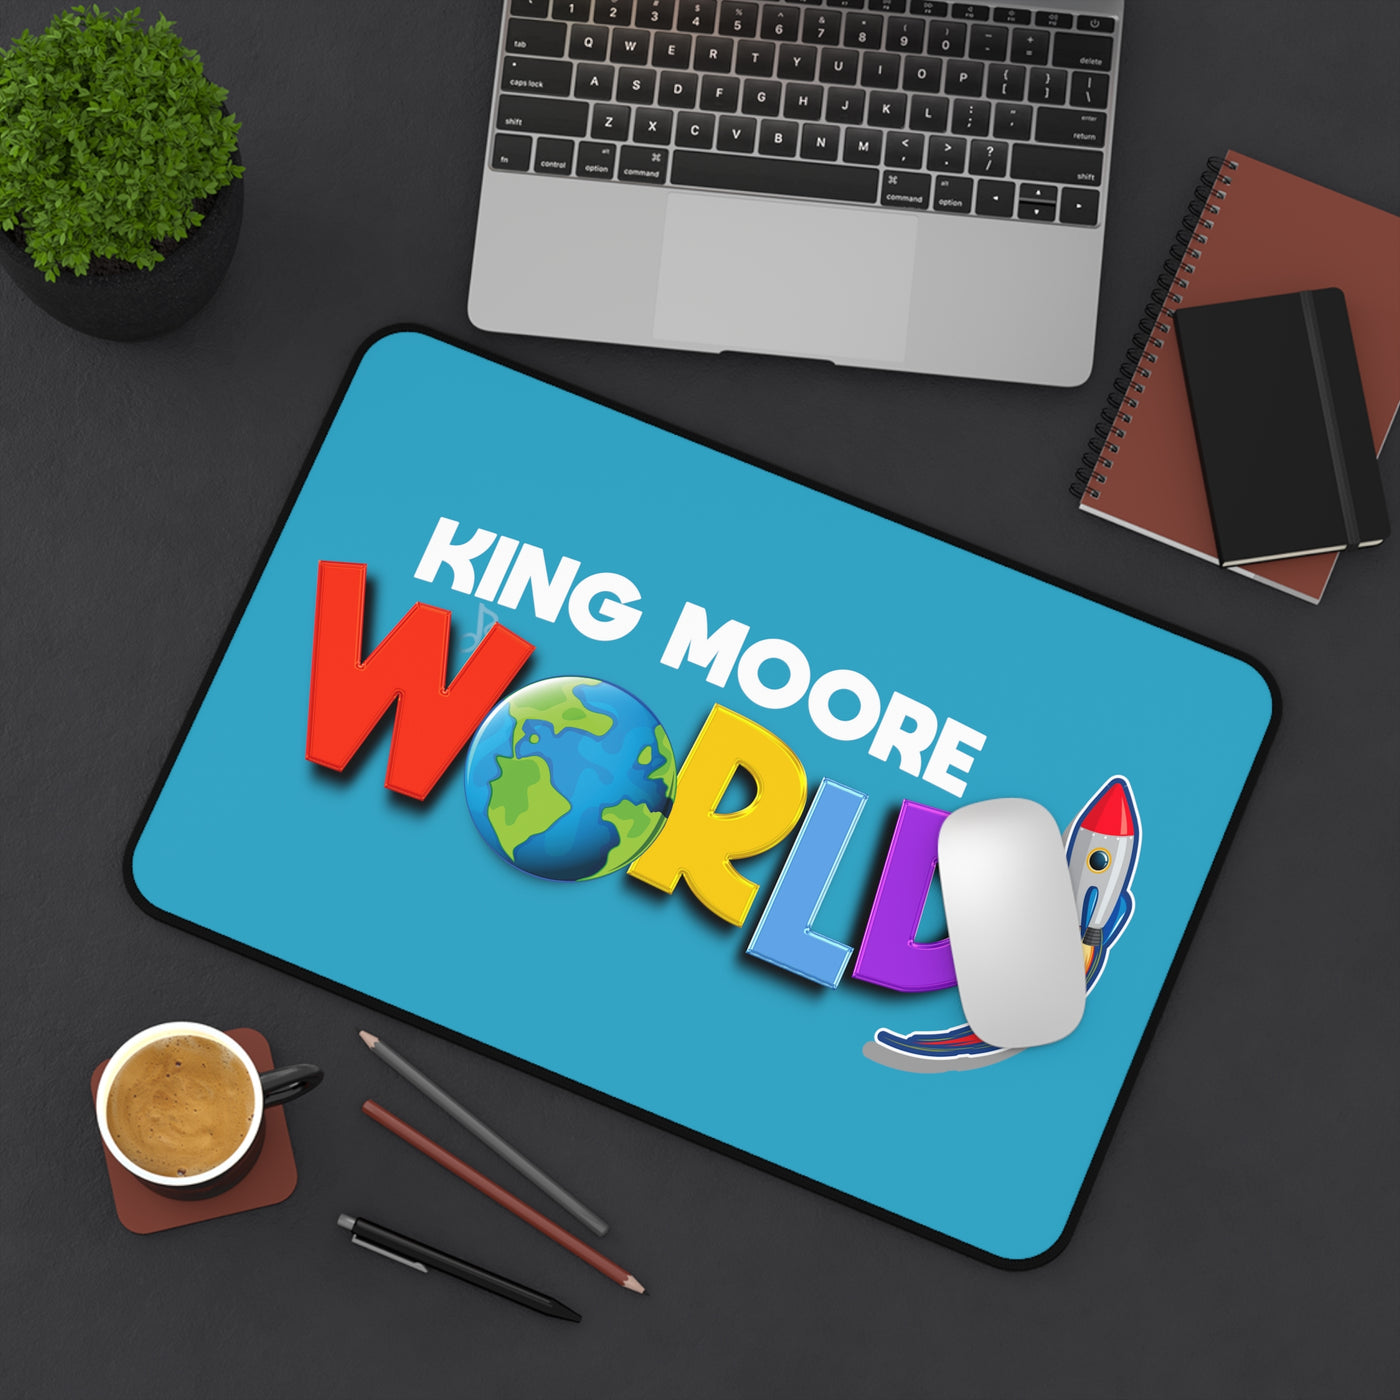 King Moore World Desk  Mat (Turquoise)